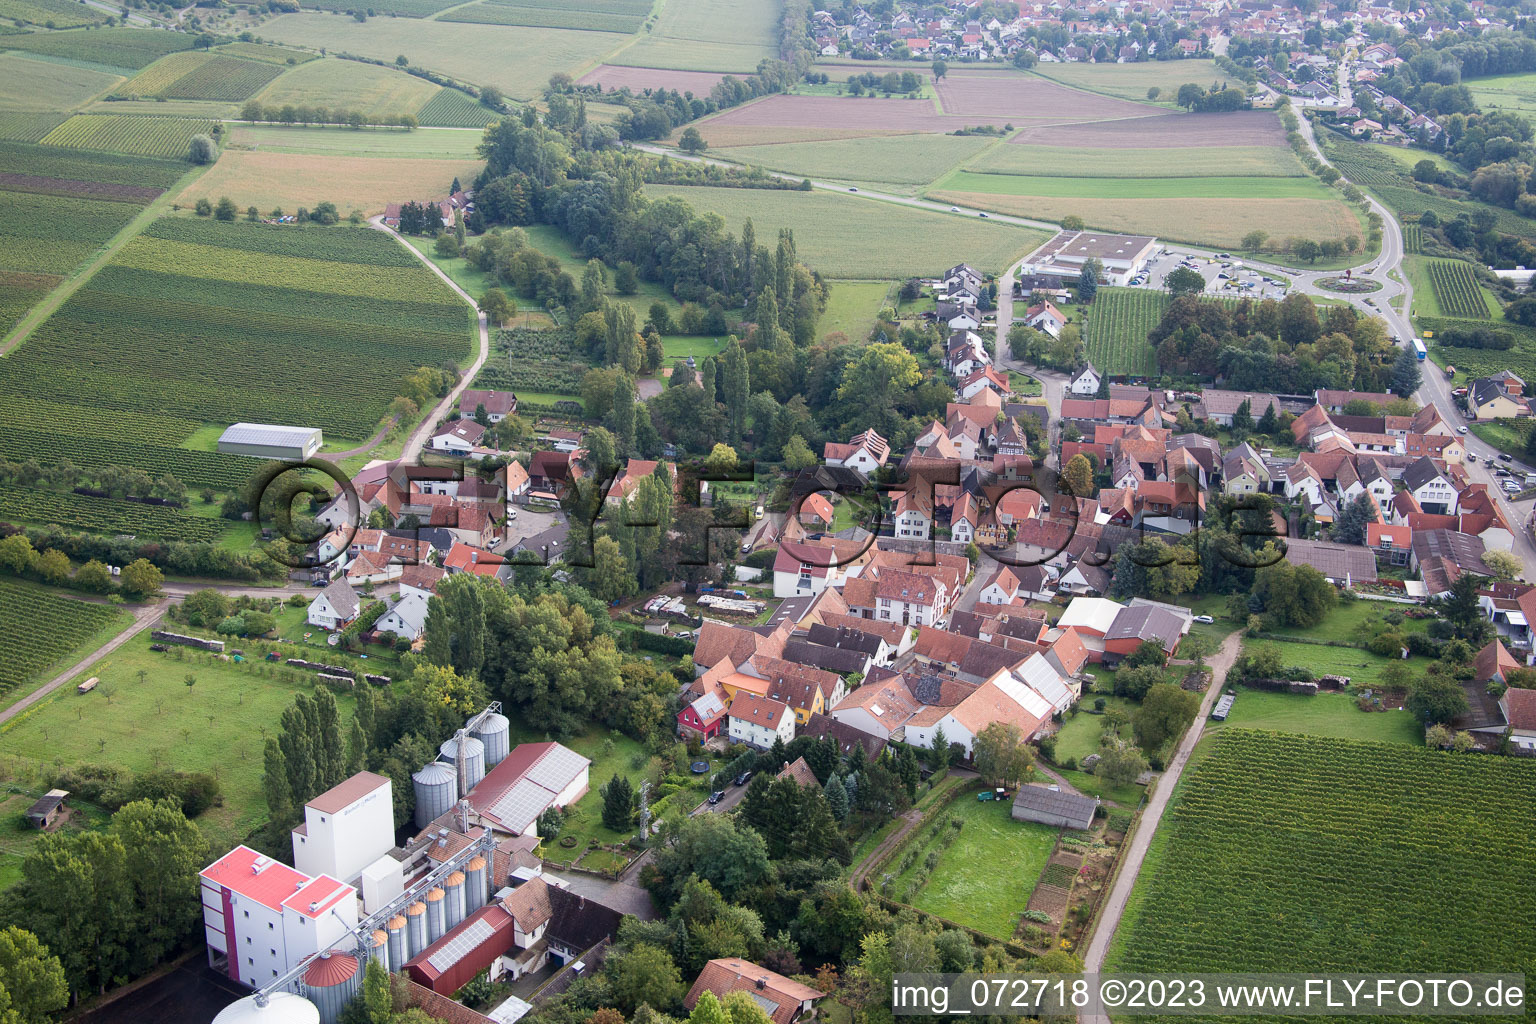 District Appenhofen in Billigheim-Ingenheim in the state Rhineland-Palatinate, Germany